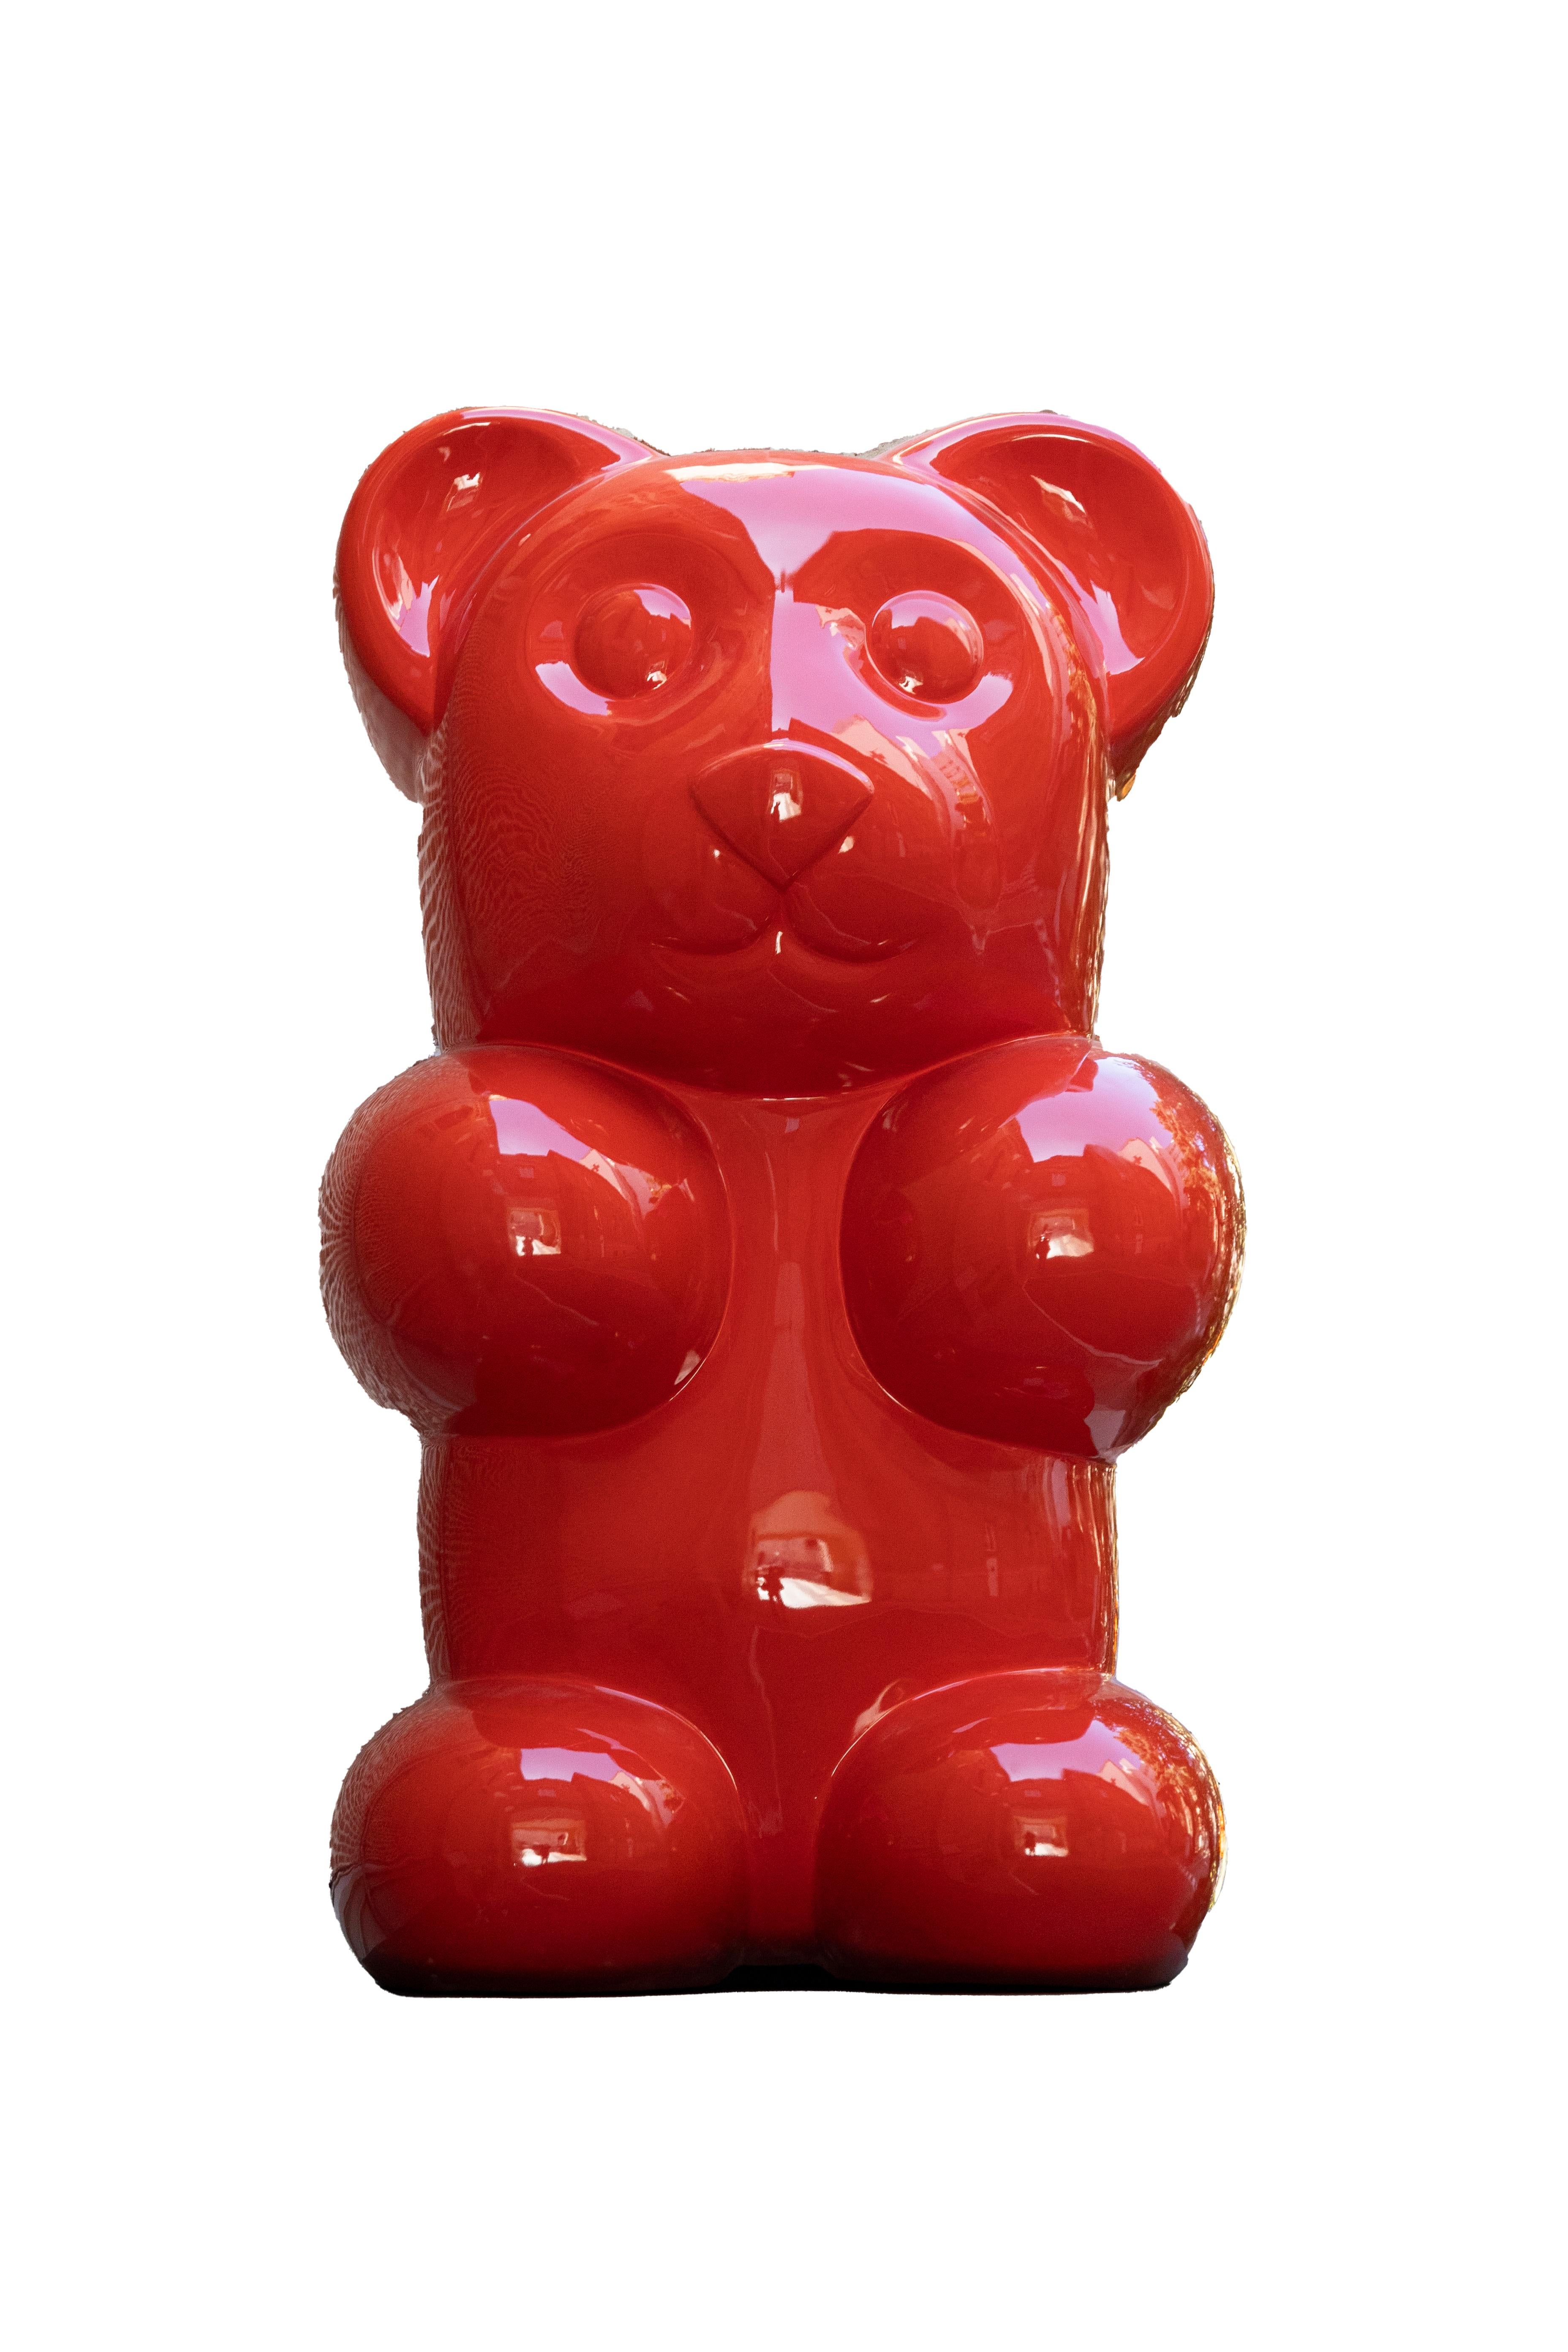 gummy bear sculpture artist